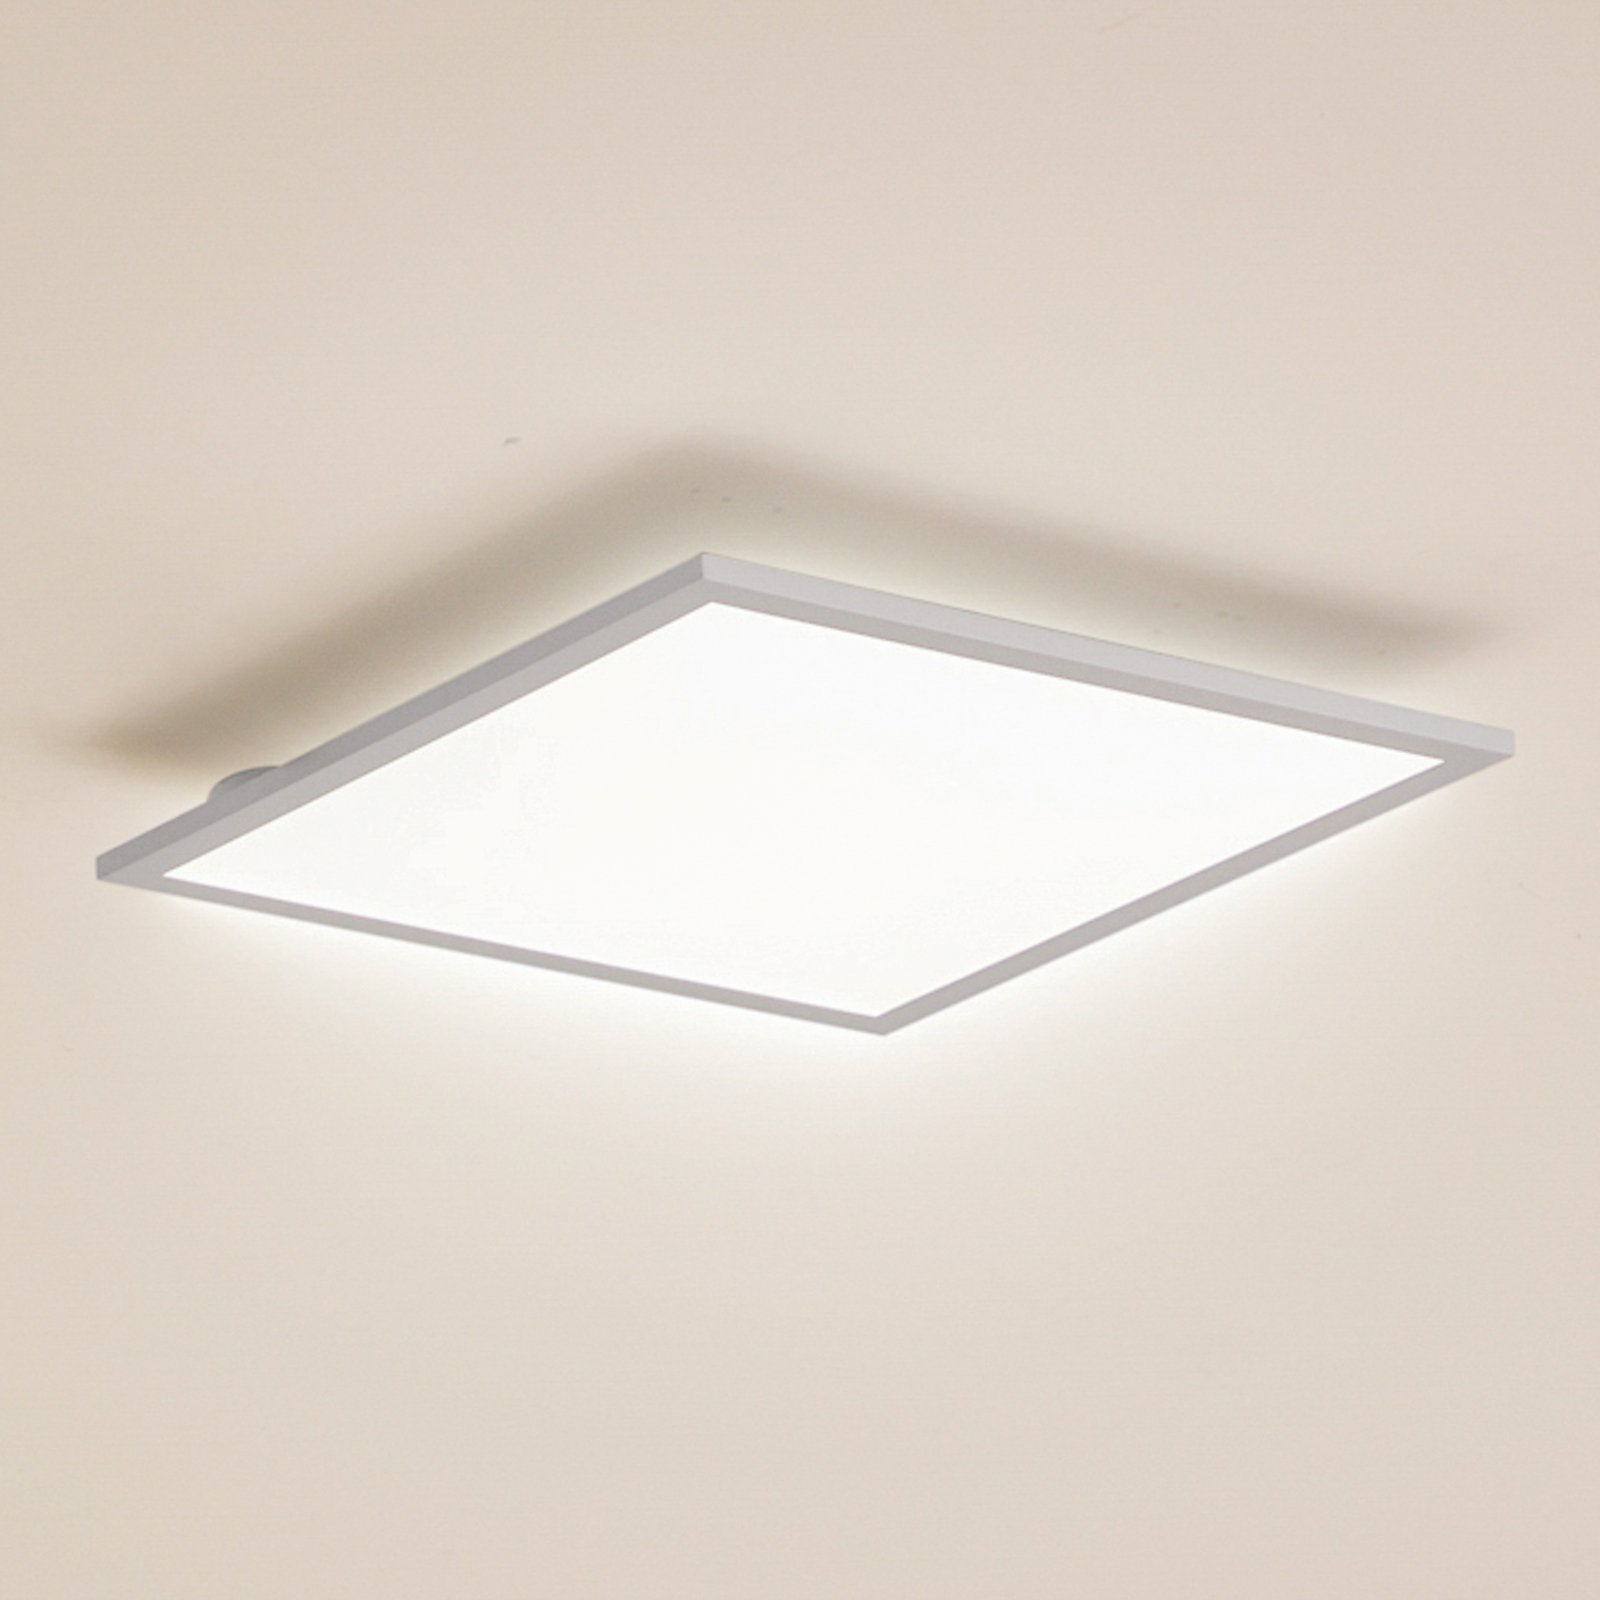 Lindby LED panel Enhife, white, 39.5 x 39.5 cm, aluminium